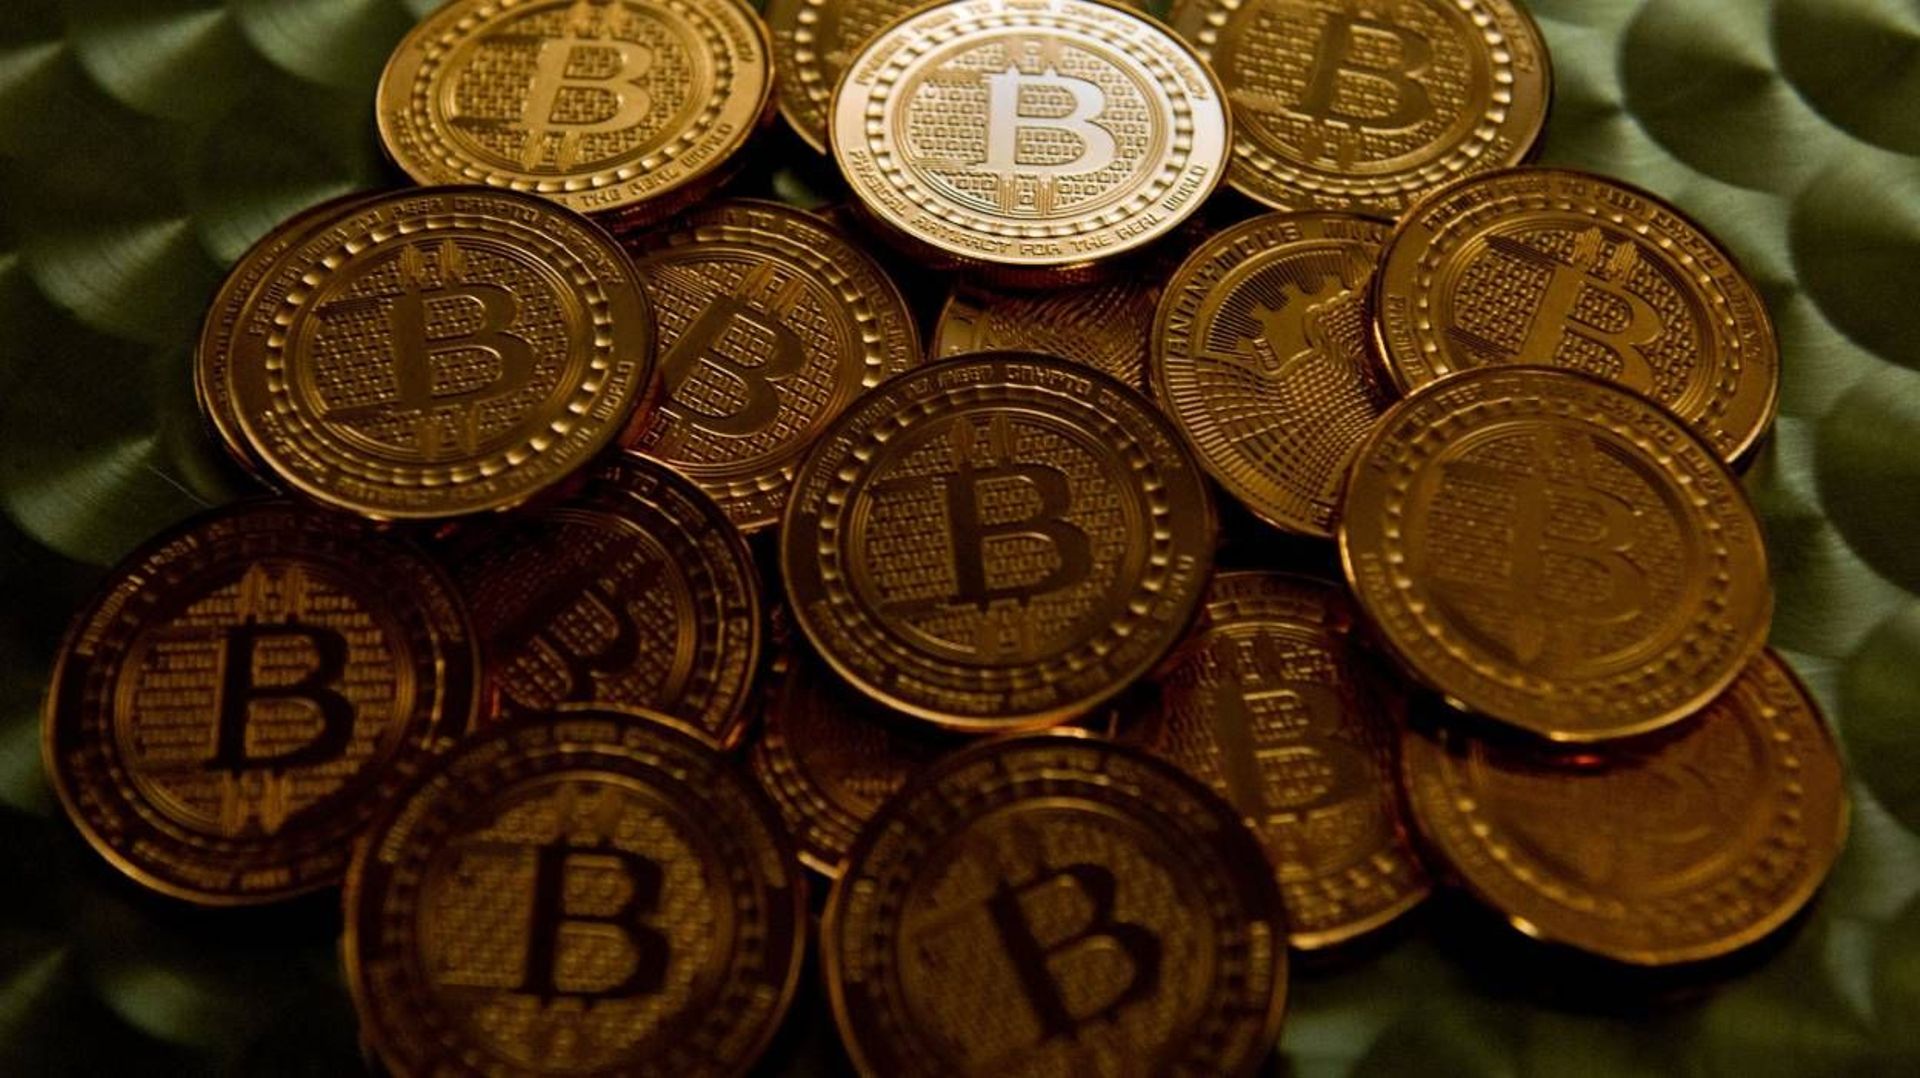 Comment mieux contrôler le bitcoin? Koen Geens a un plan